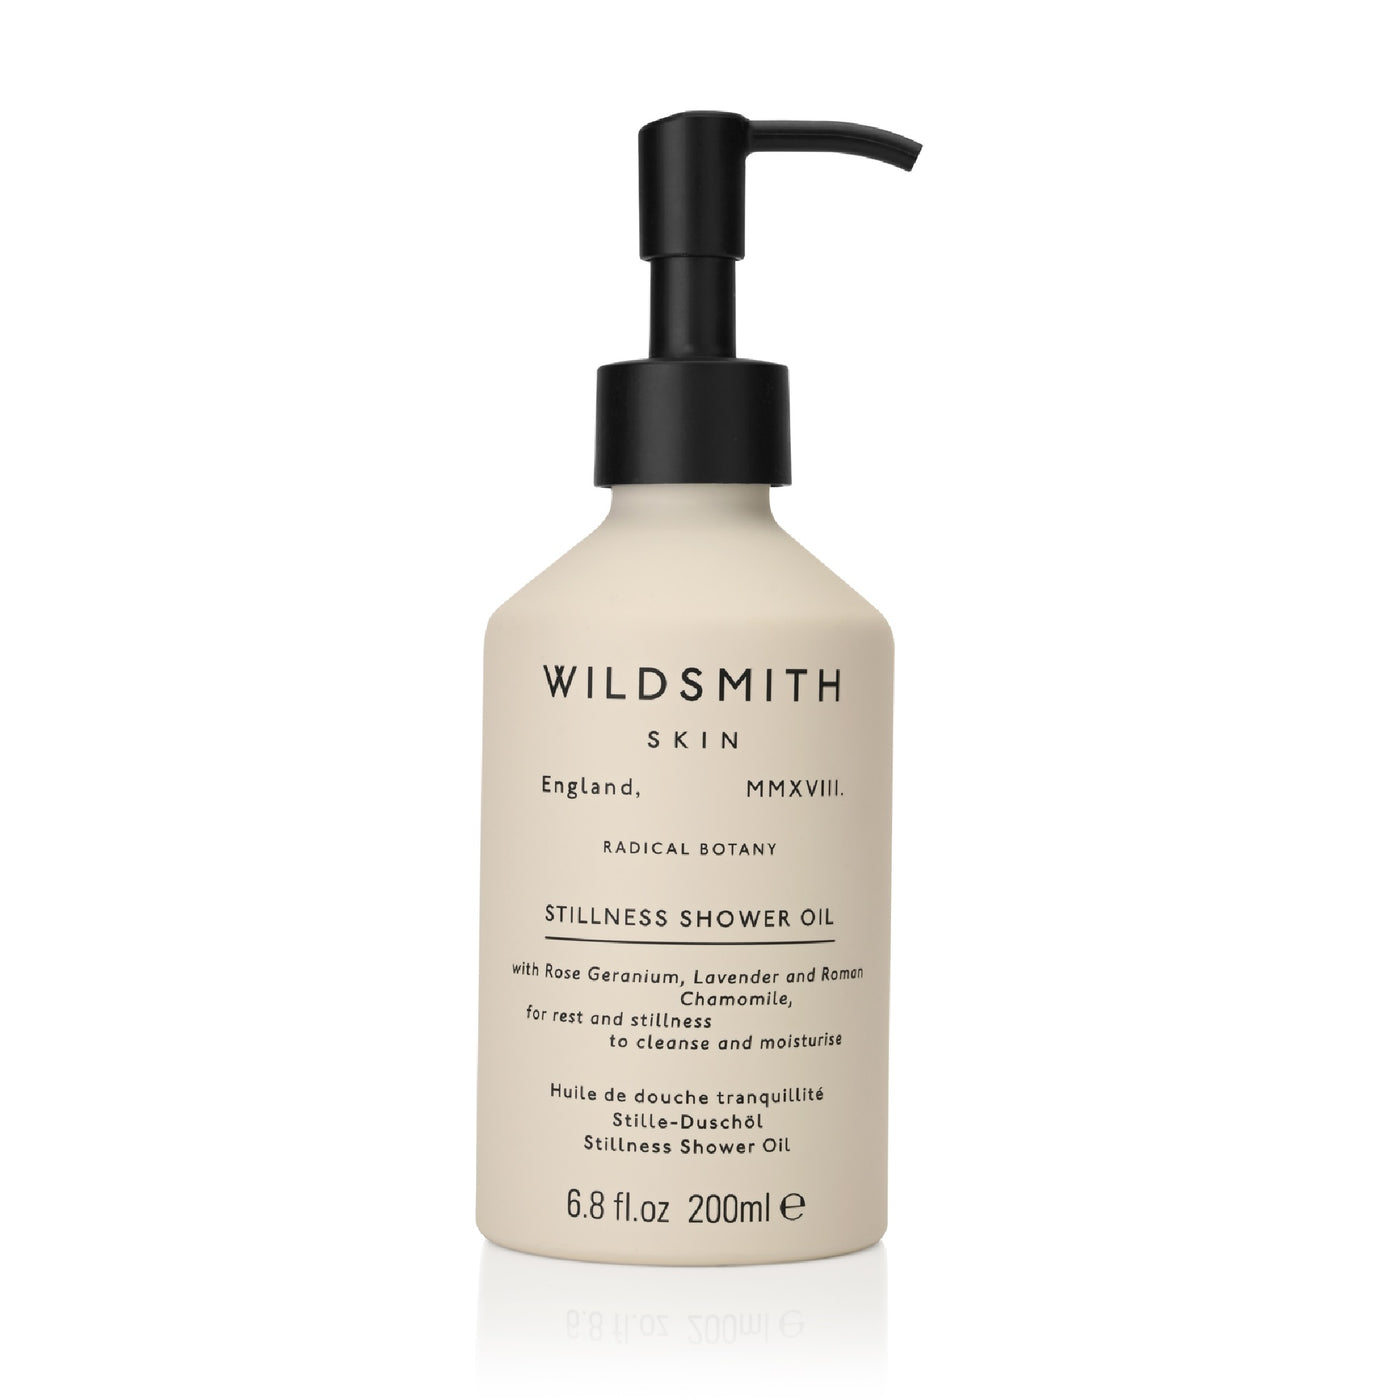 Wildsmith Stillness Shower Oil 200ml